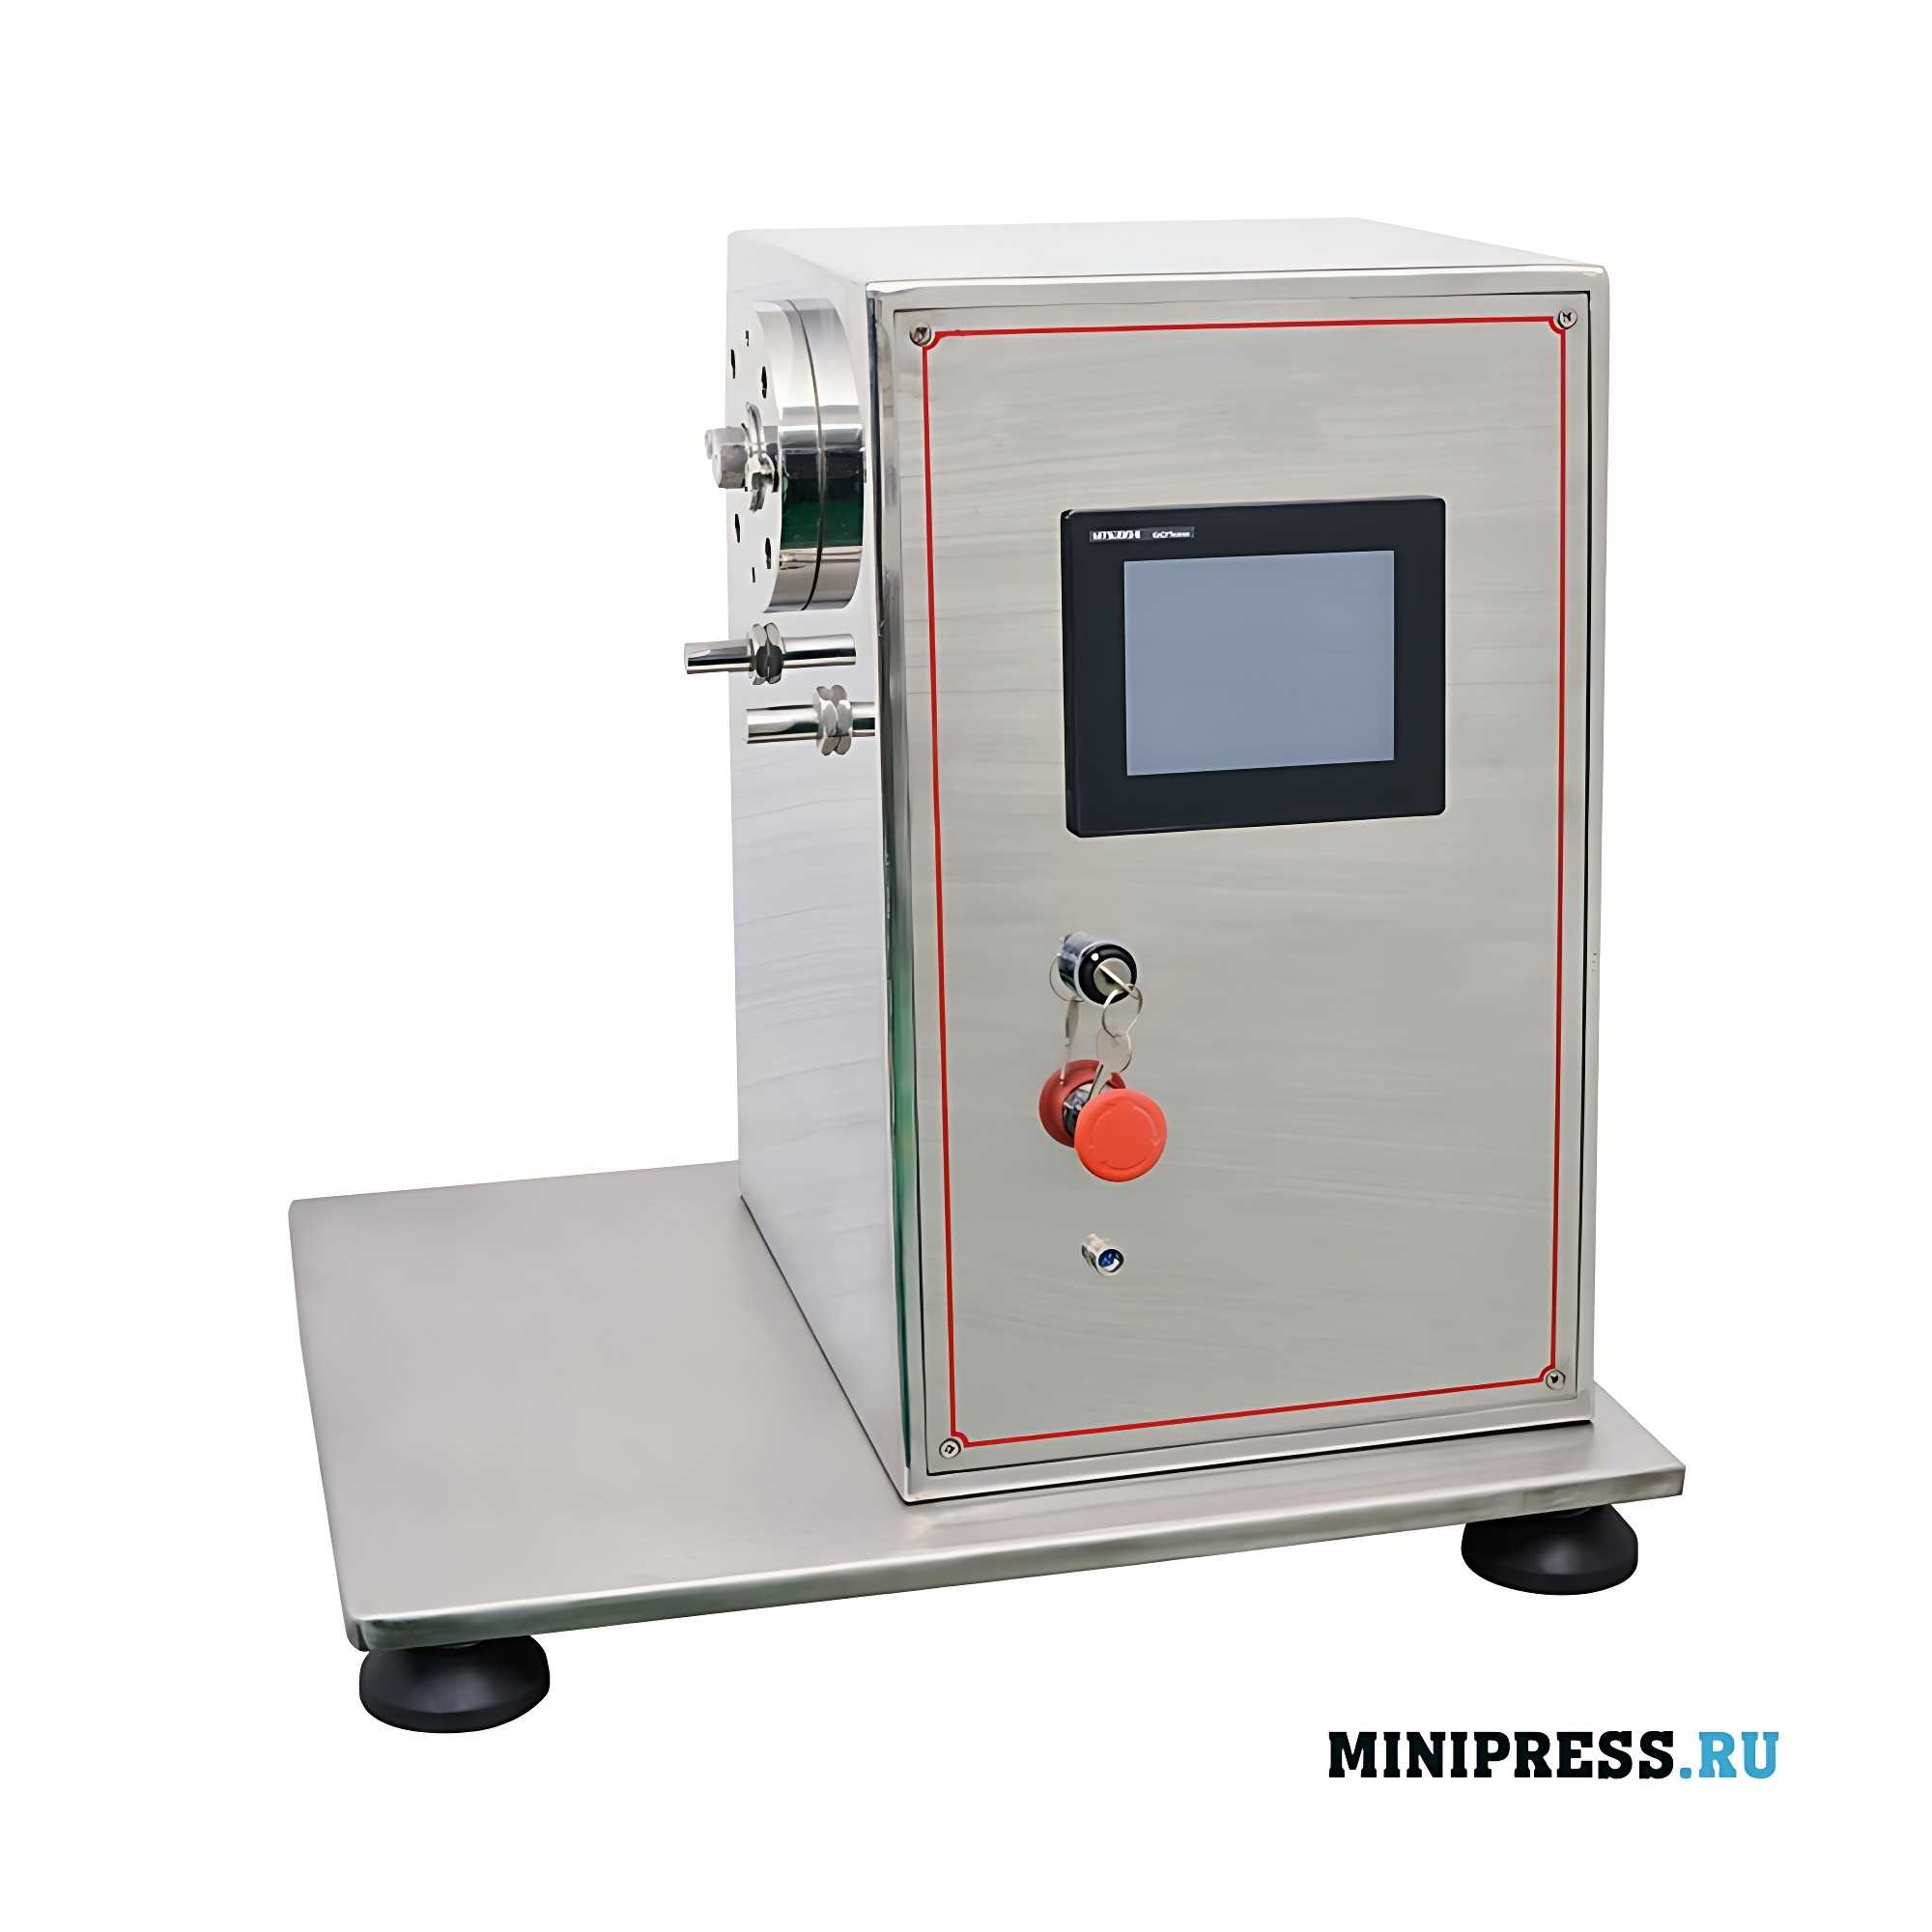 Multifunctional experimental pharmaceutical equipment UNIO 2